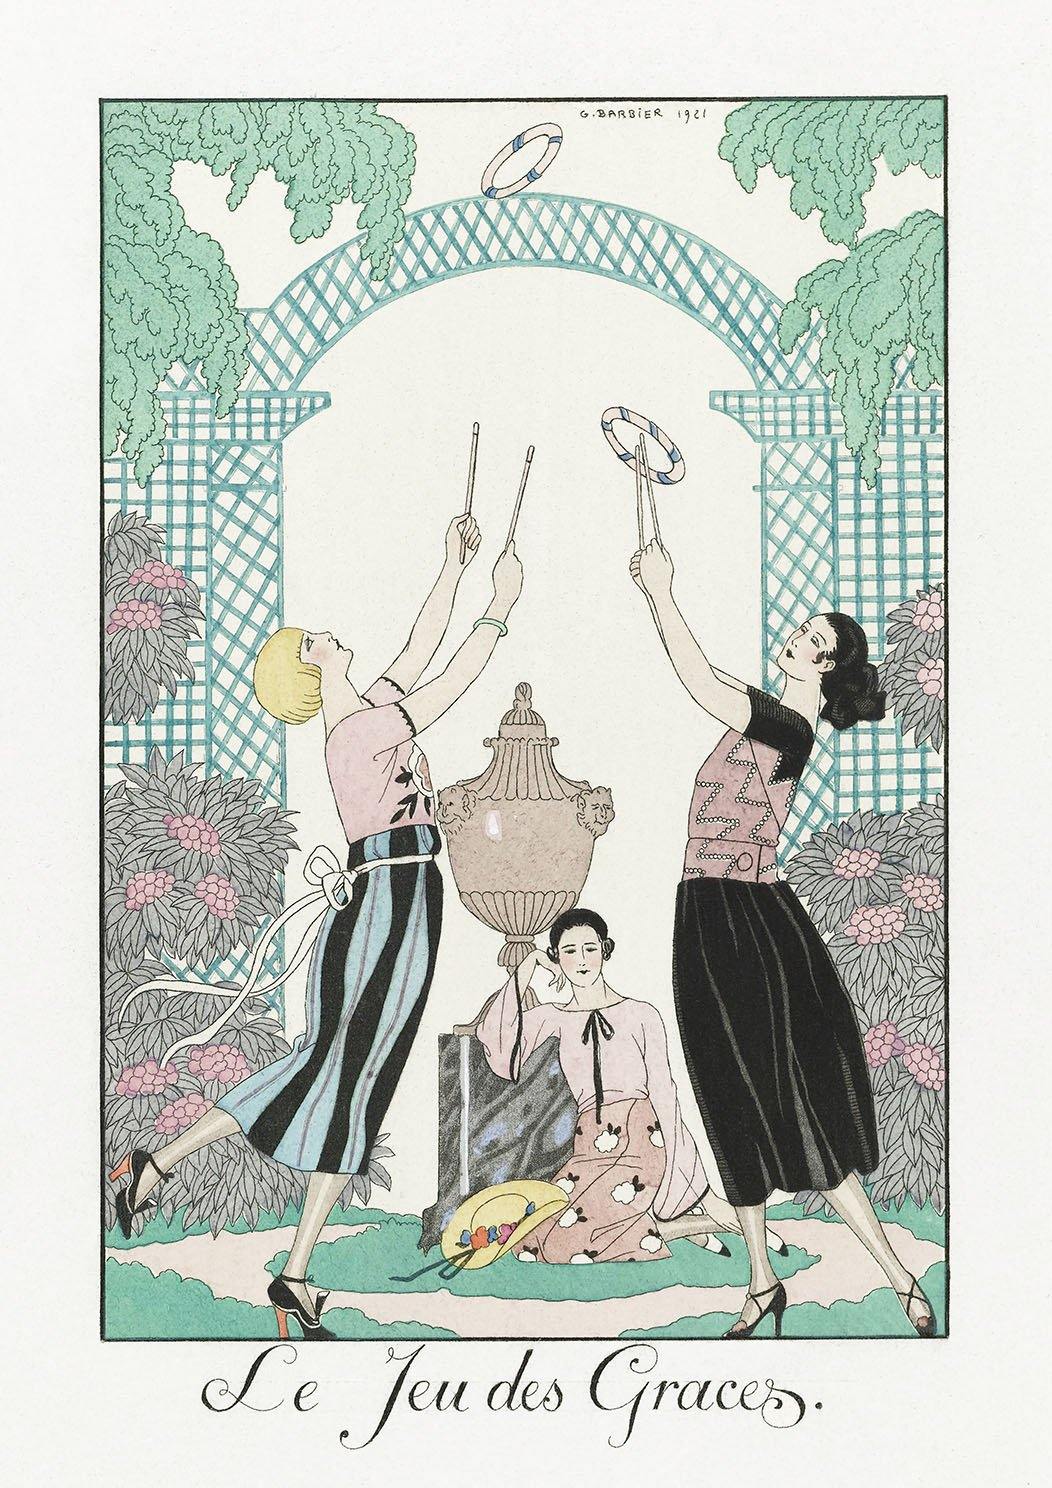 GEORGE BARBIER PRINT: Le Jeu des Graces illustration - Pimlico Prints